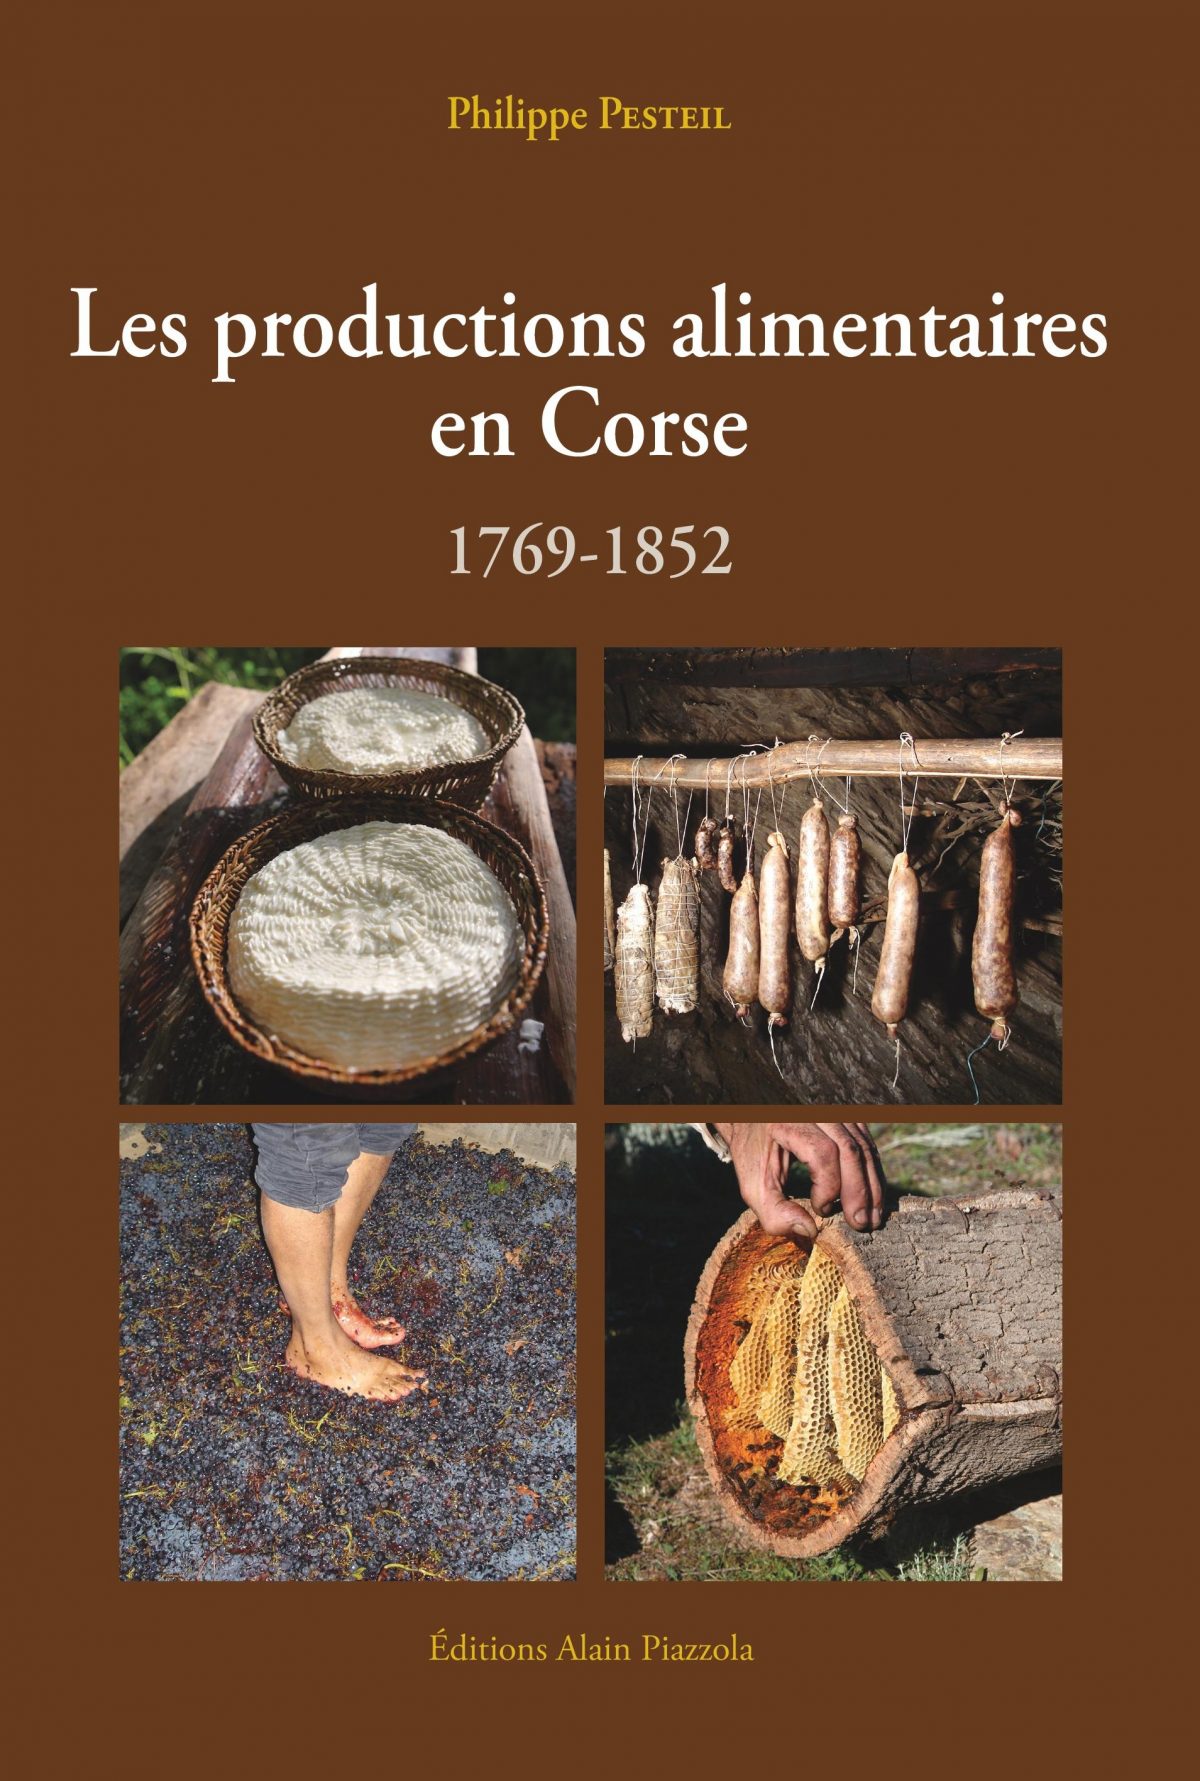 Productions Alimentaires en Corse (1769-1852), Ajaccio : Editions Alain Piazzola, 2016.